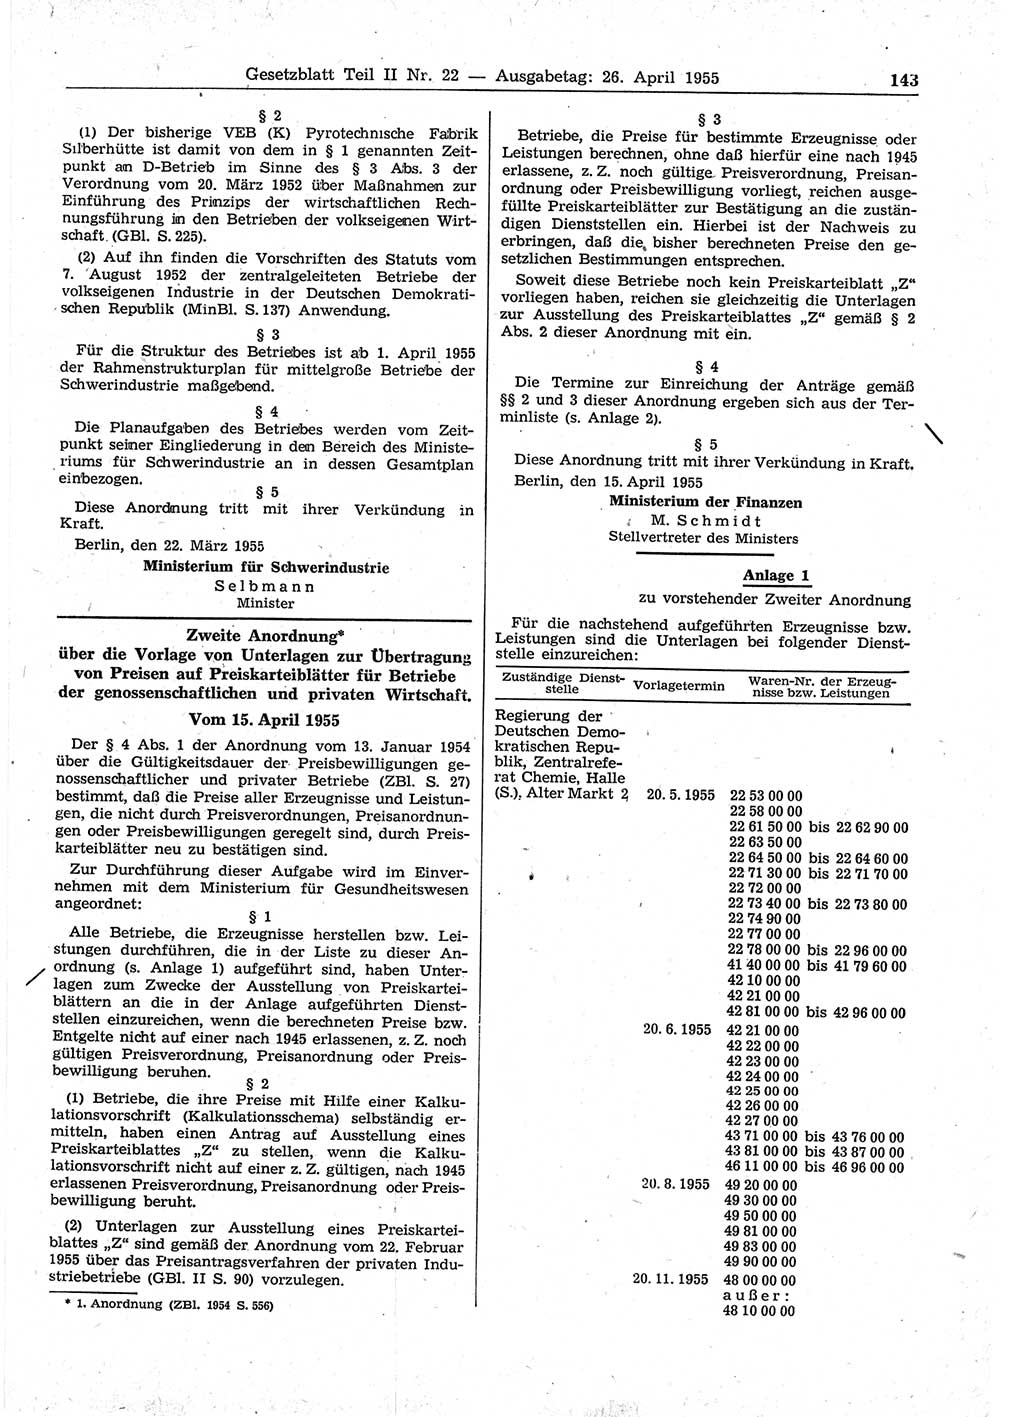 Gesetzblatt (GBl.) der Deutschen Demokratischen Republik (DDR) Teil ⅠⅠ 1955, Seite 143 (GBl. DDR ⅠⅠ 1955, S. 143)